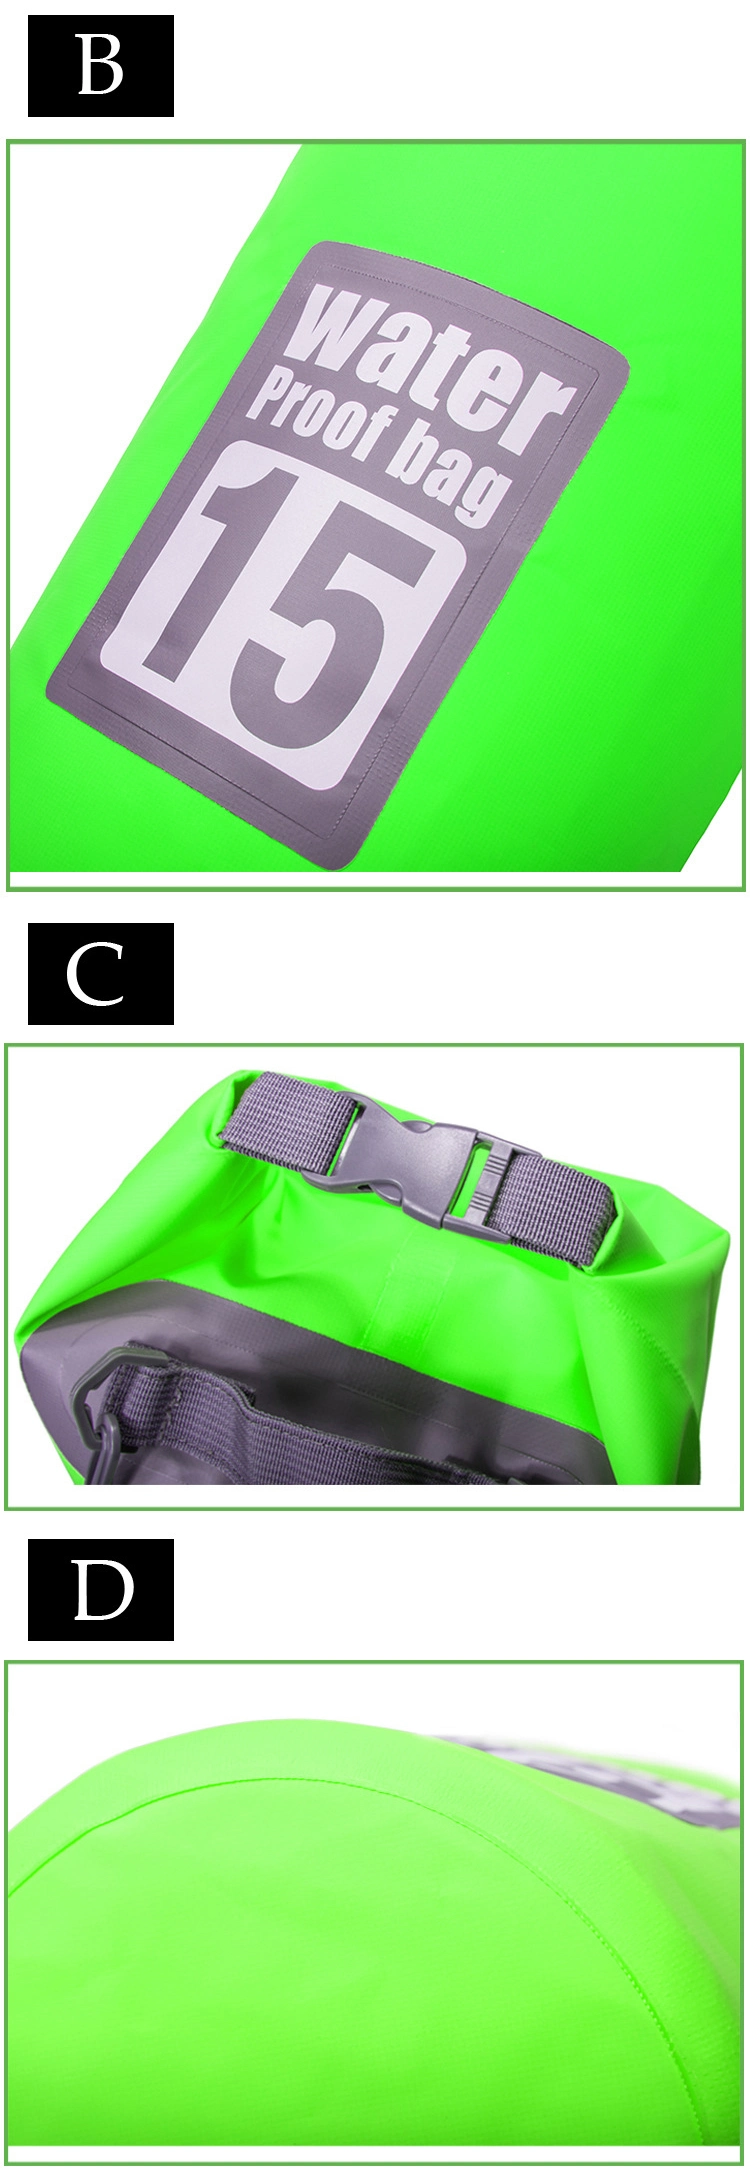 Custom Outdoor Best Waterproof Roll Top Floating Dry Bag Backpack for Kayaking